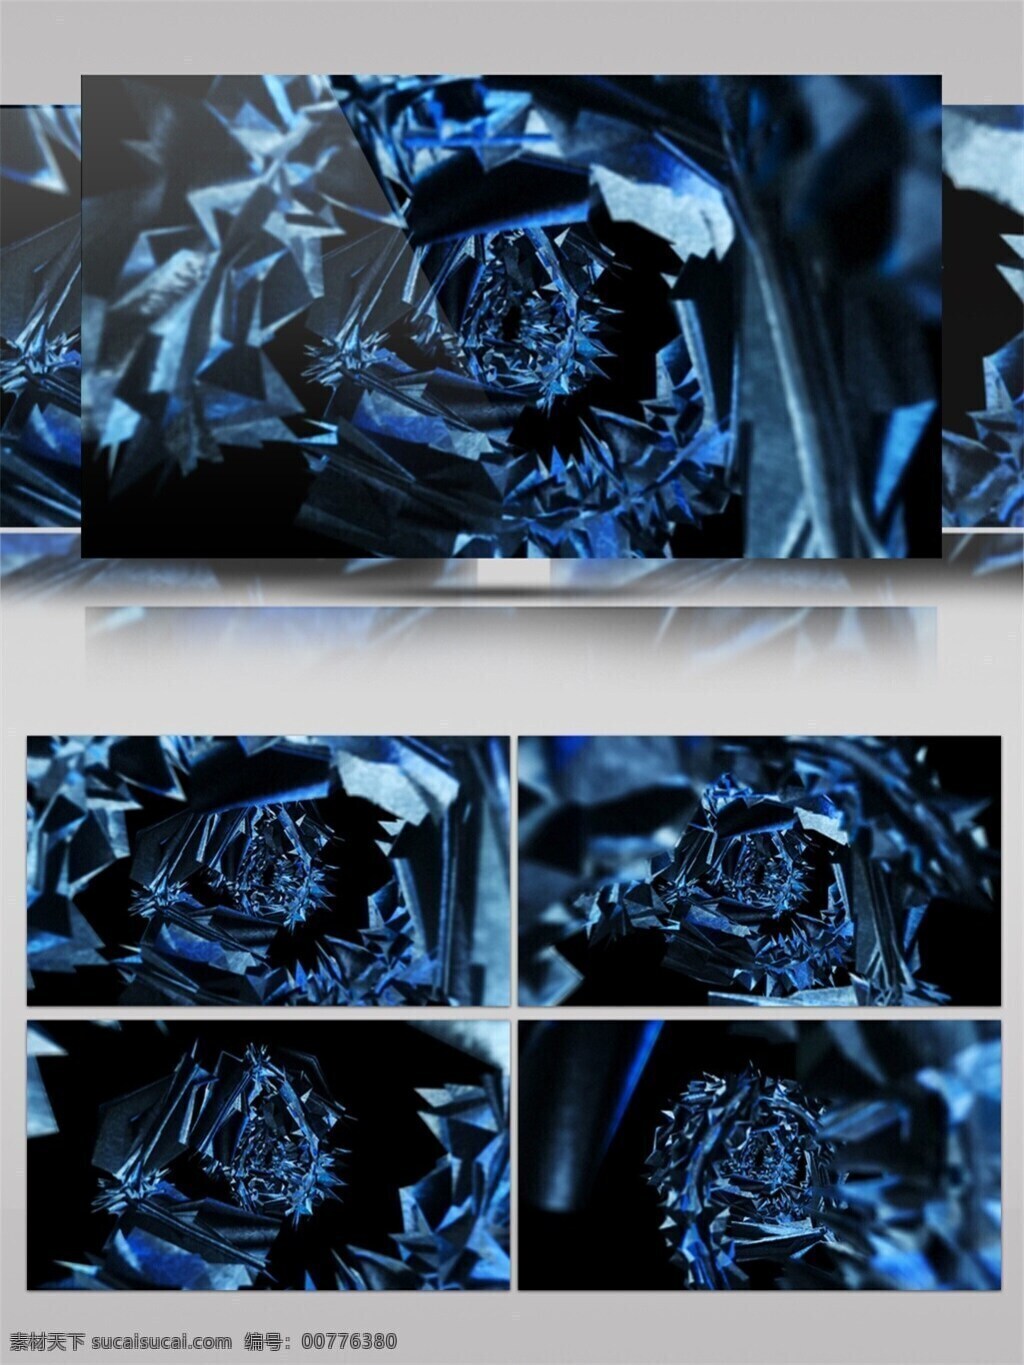 光 蓝 玫瑰 高清 视频 3d视频素材 电脑屏幕保护 高清视频素材 光斑散射 华丽蓝色 蓝色 视觉享受 手机壁纸 特效视频素材